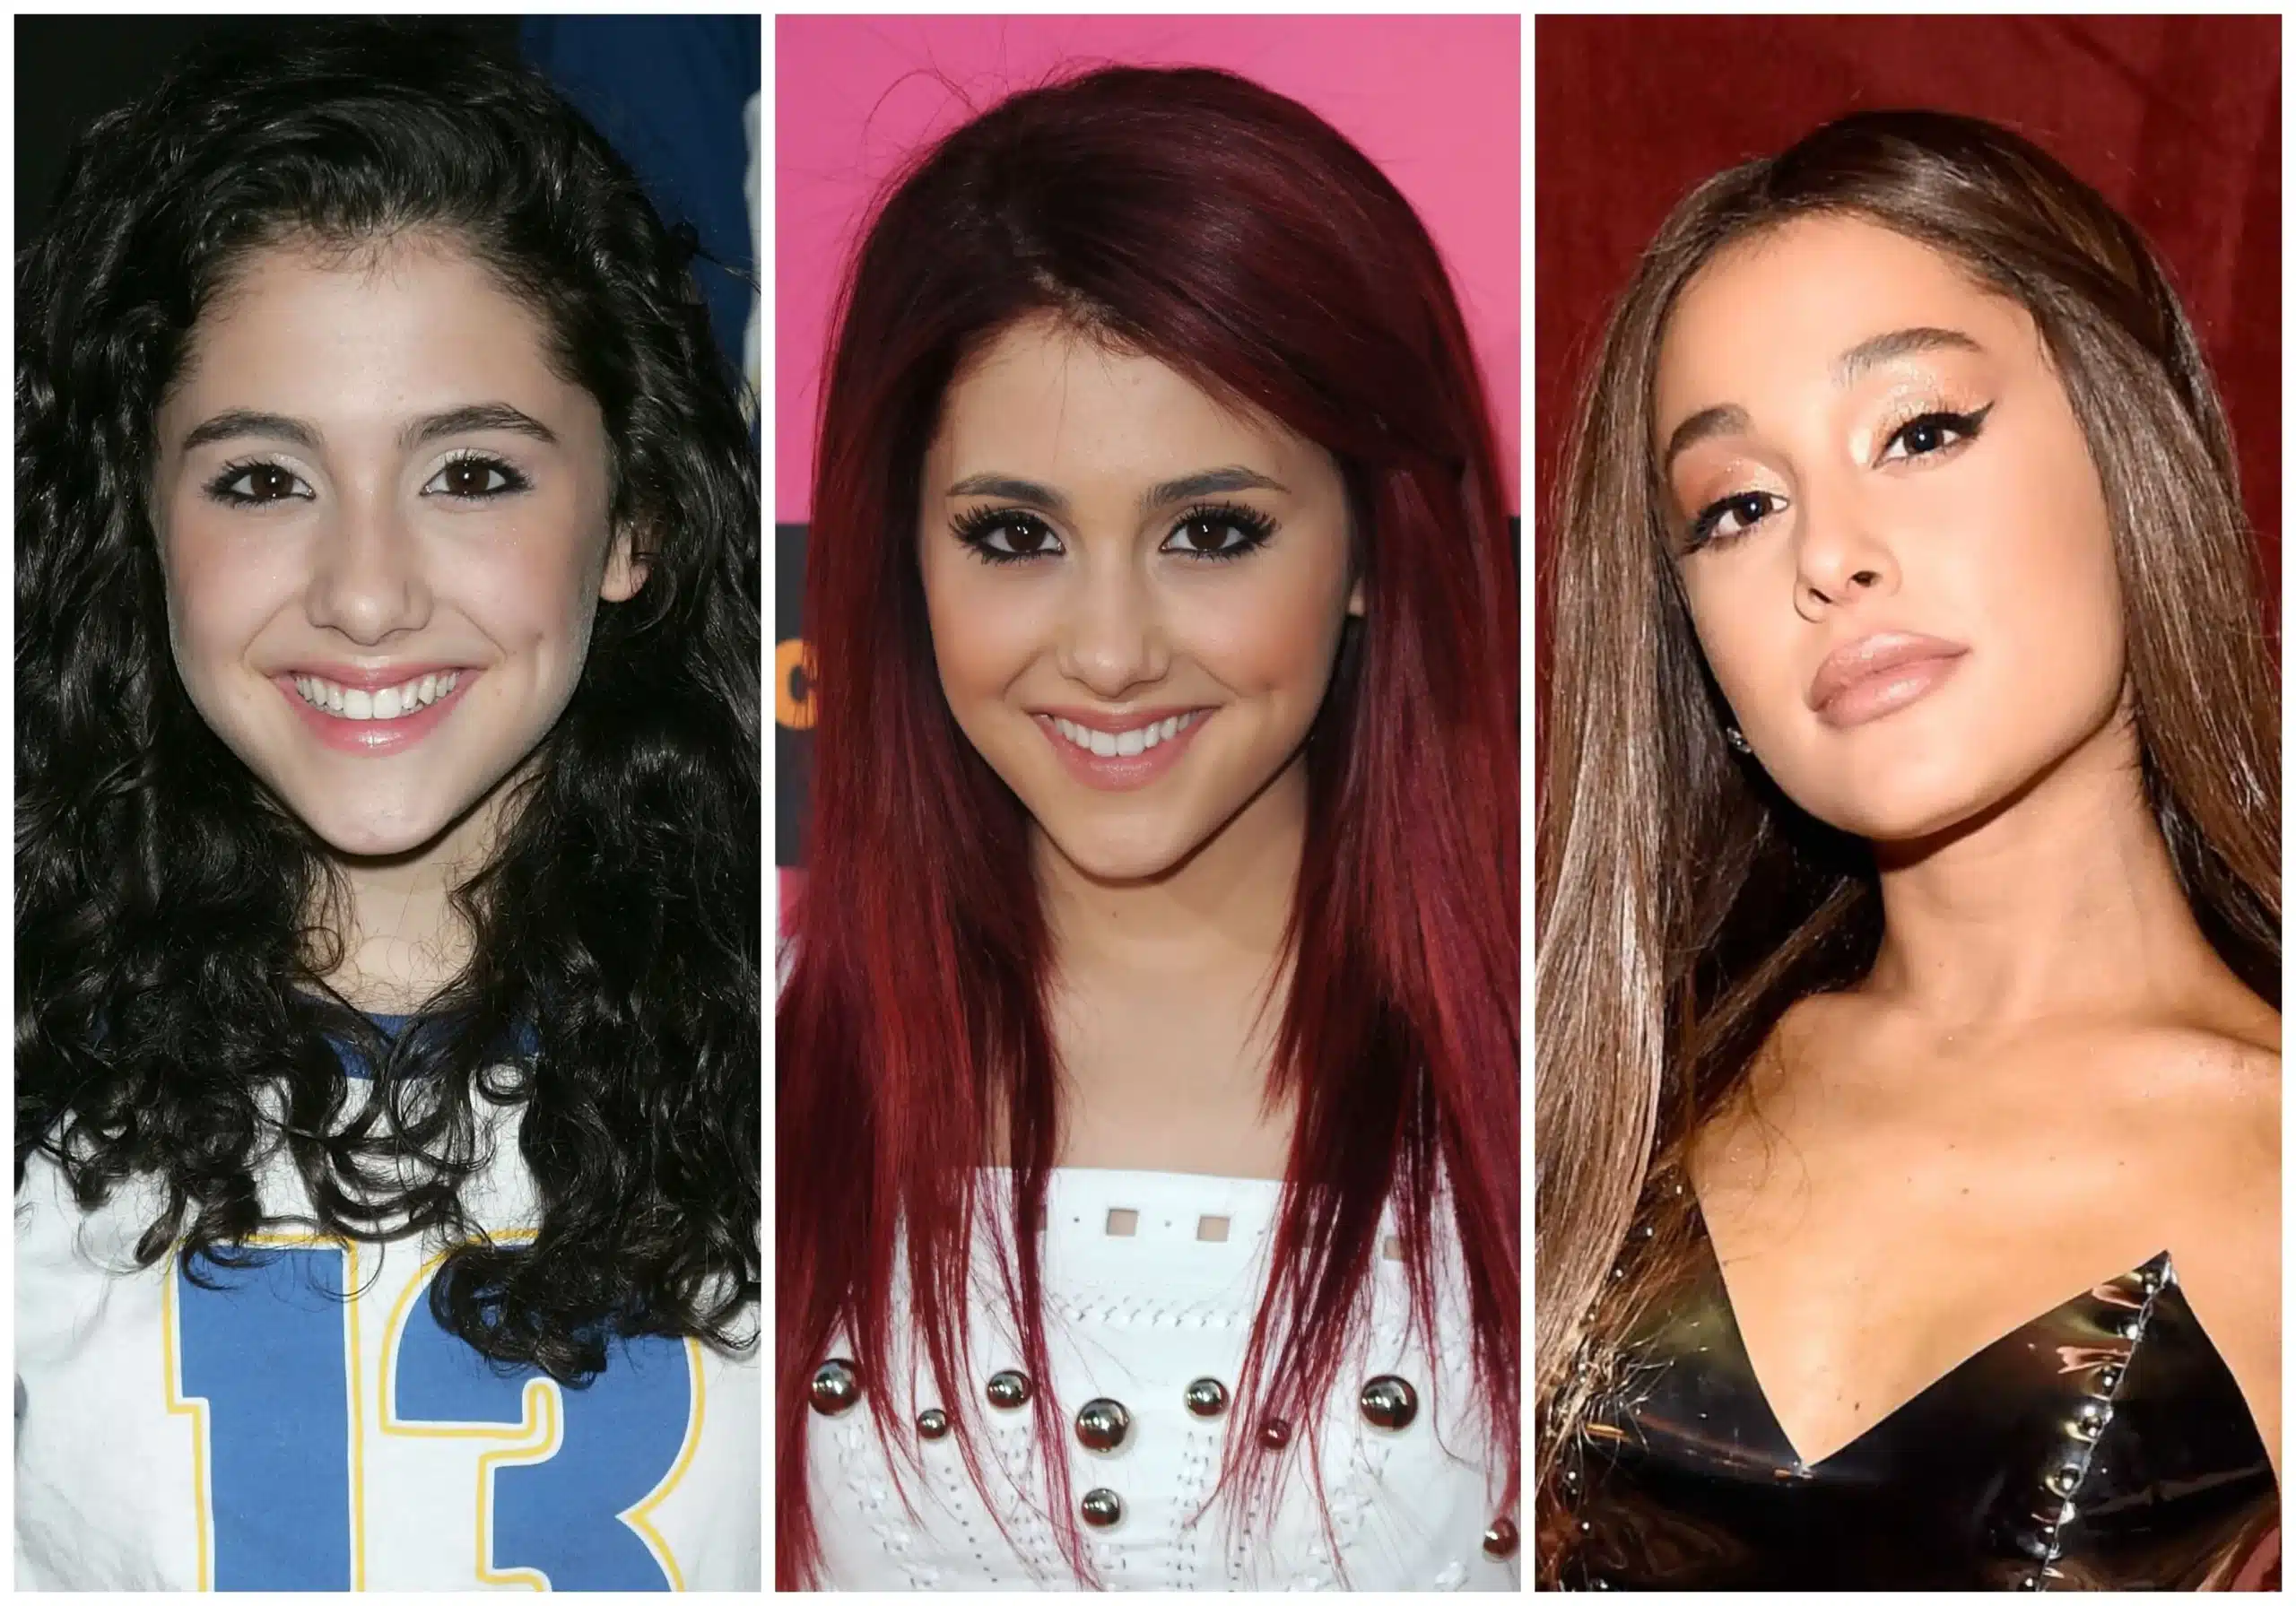 Ariana transformation